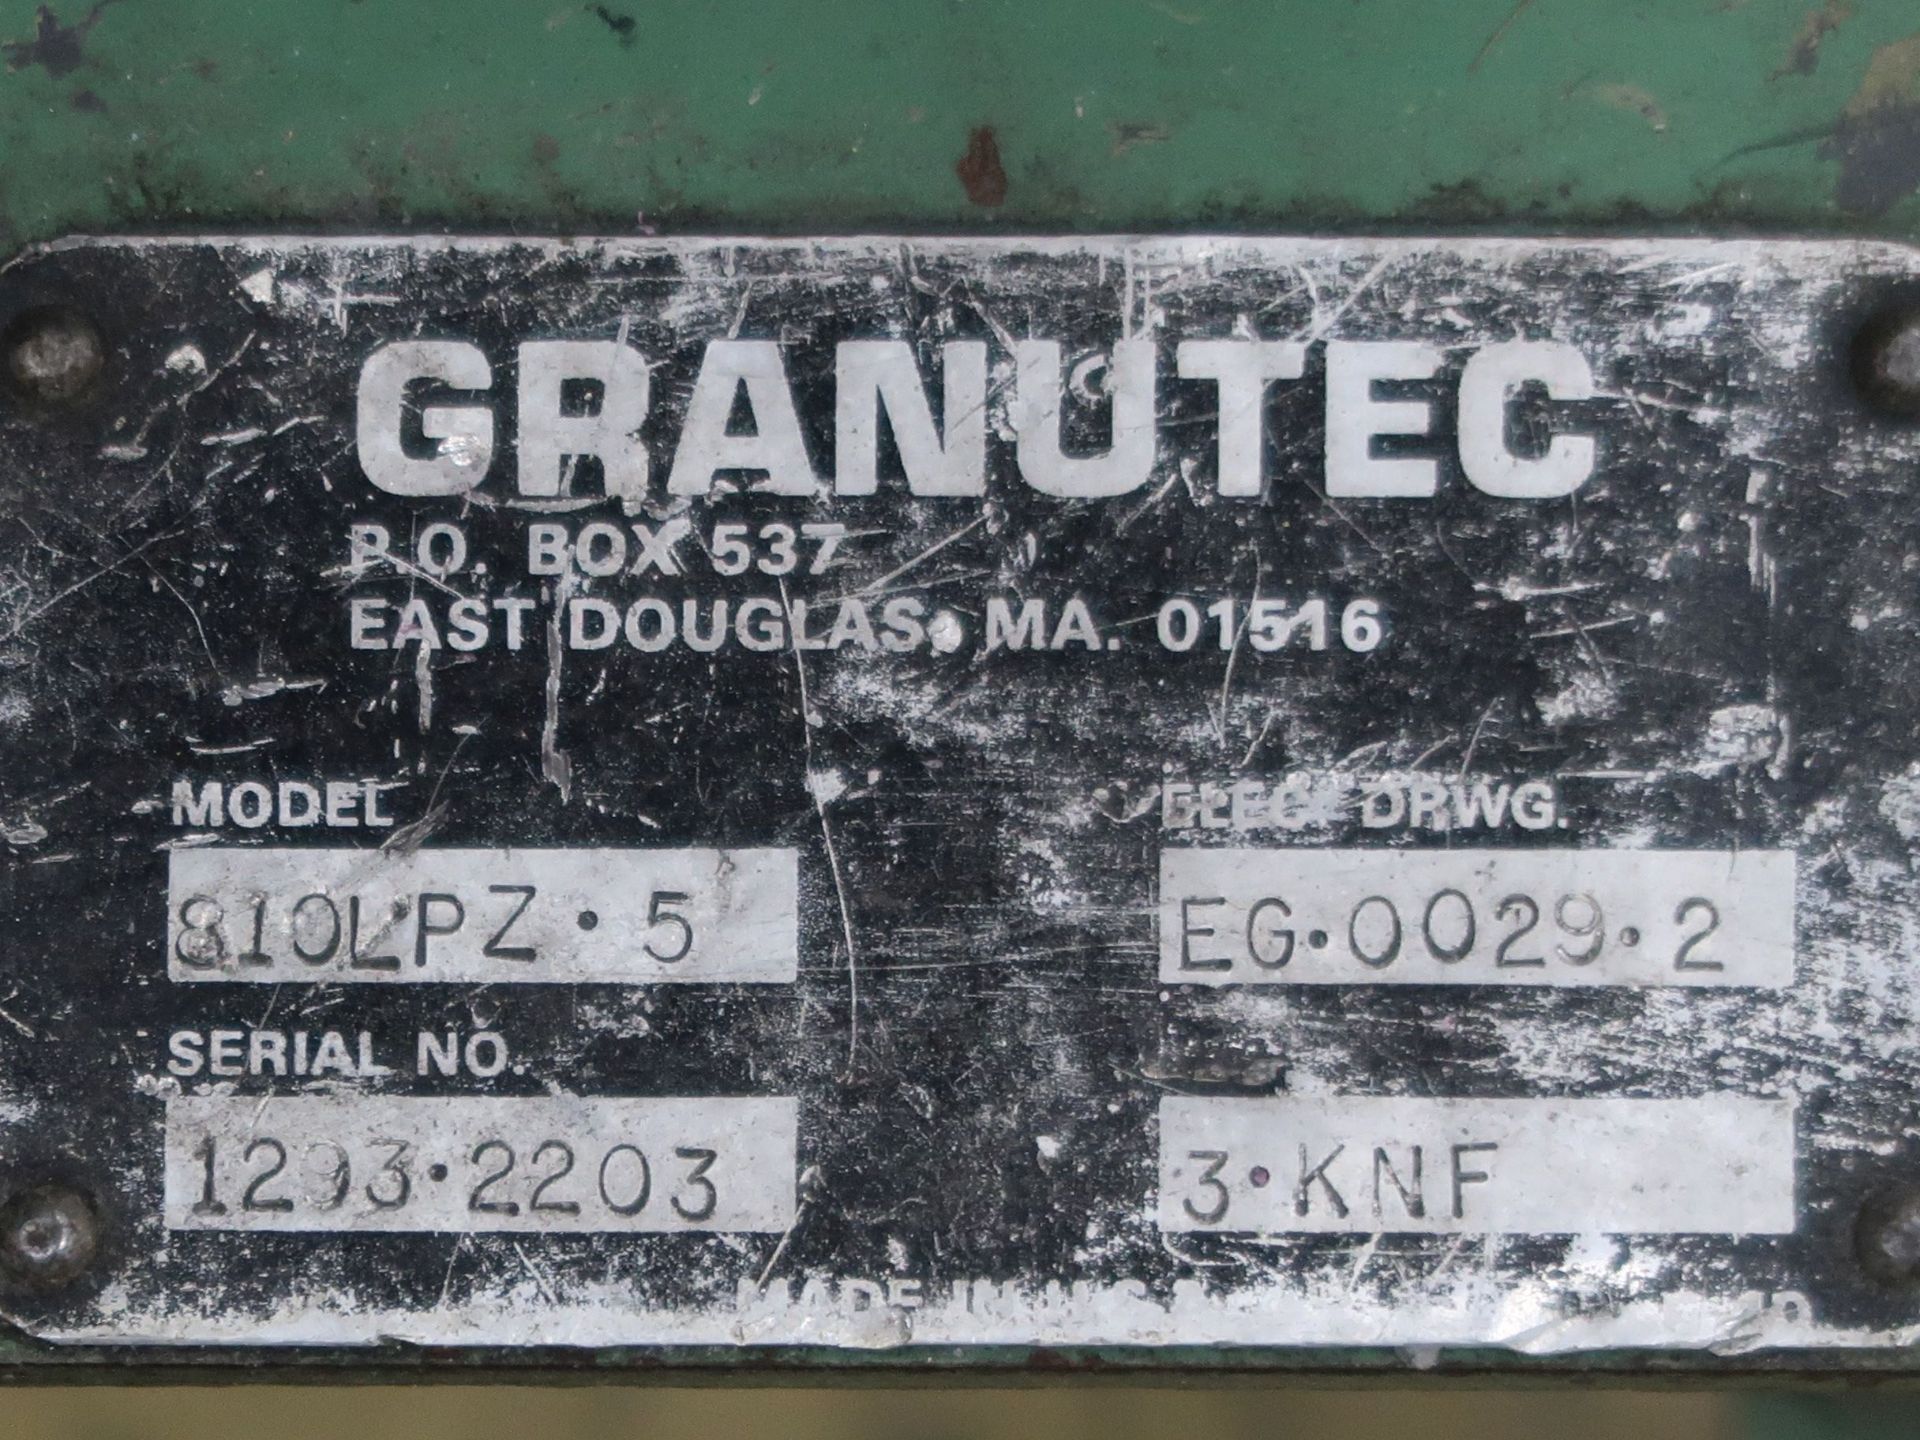 5 HP GRANUTEC MODEL 810LPZ-5 GRANULATOR; S/N 1293-2203 - Image 5 of 5